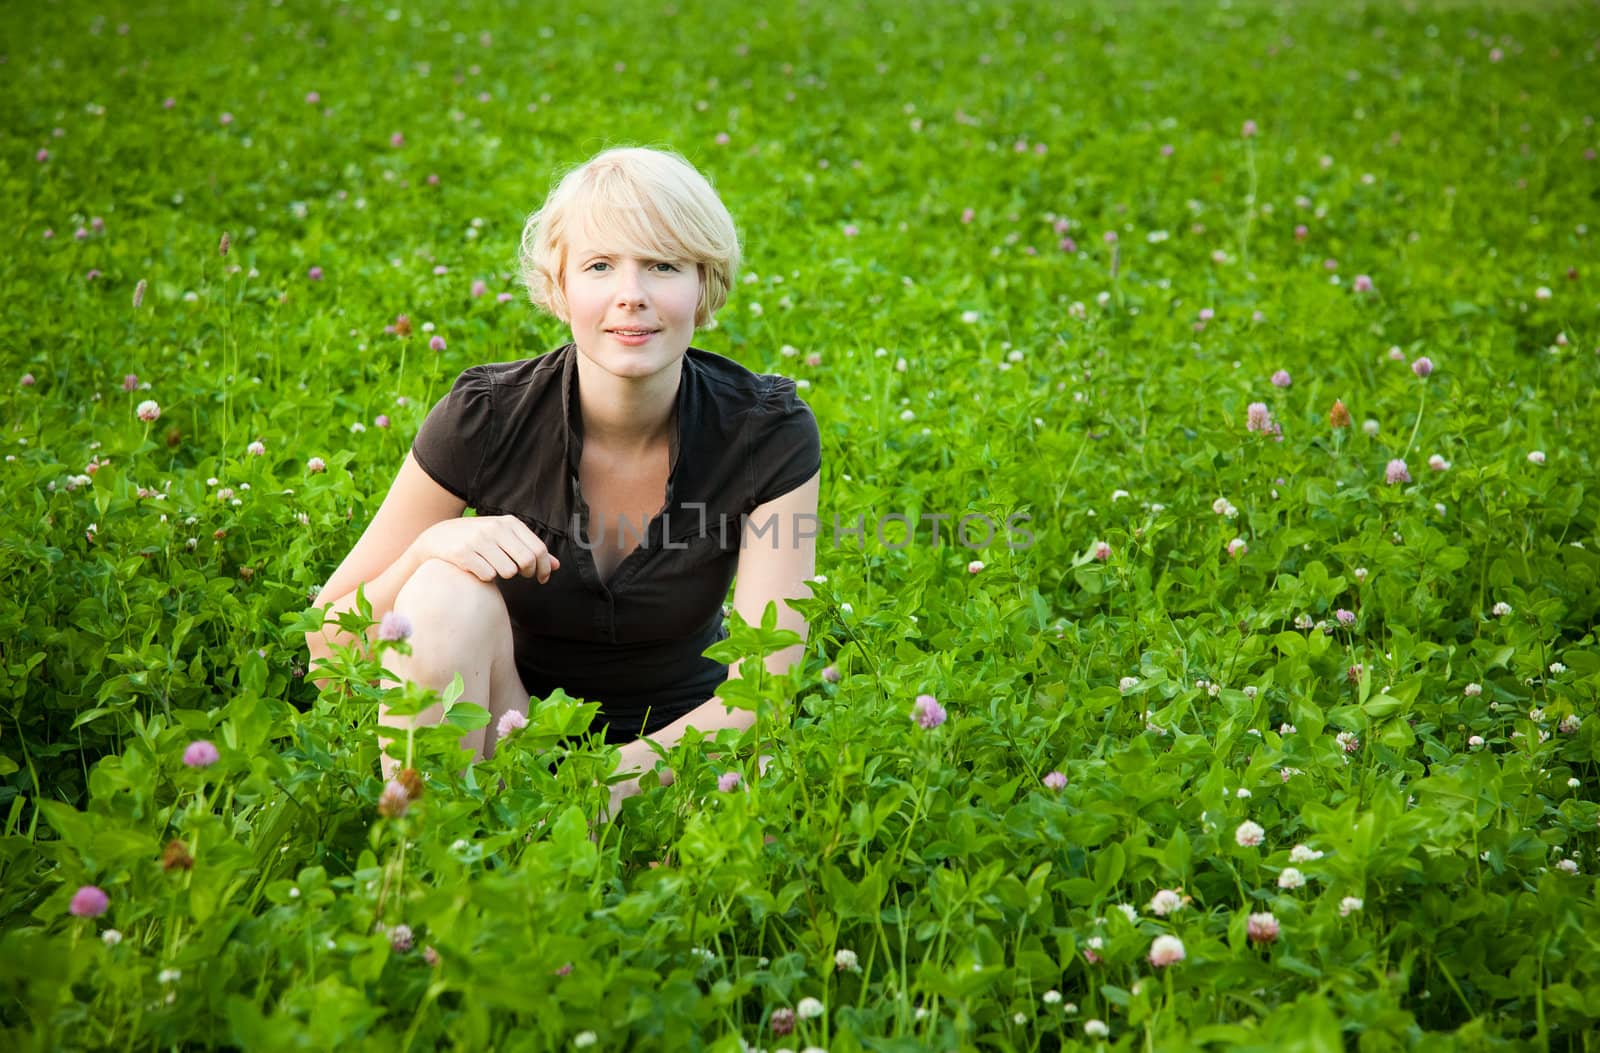 Girl in a field of flowers posing